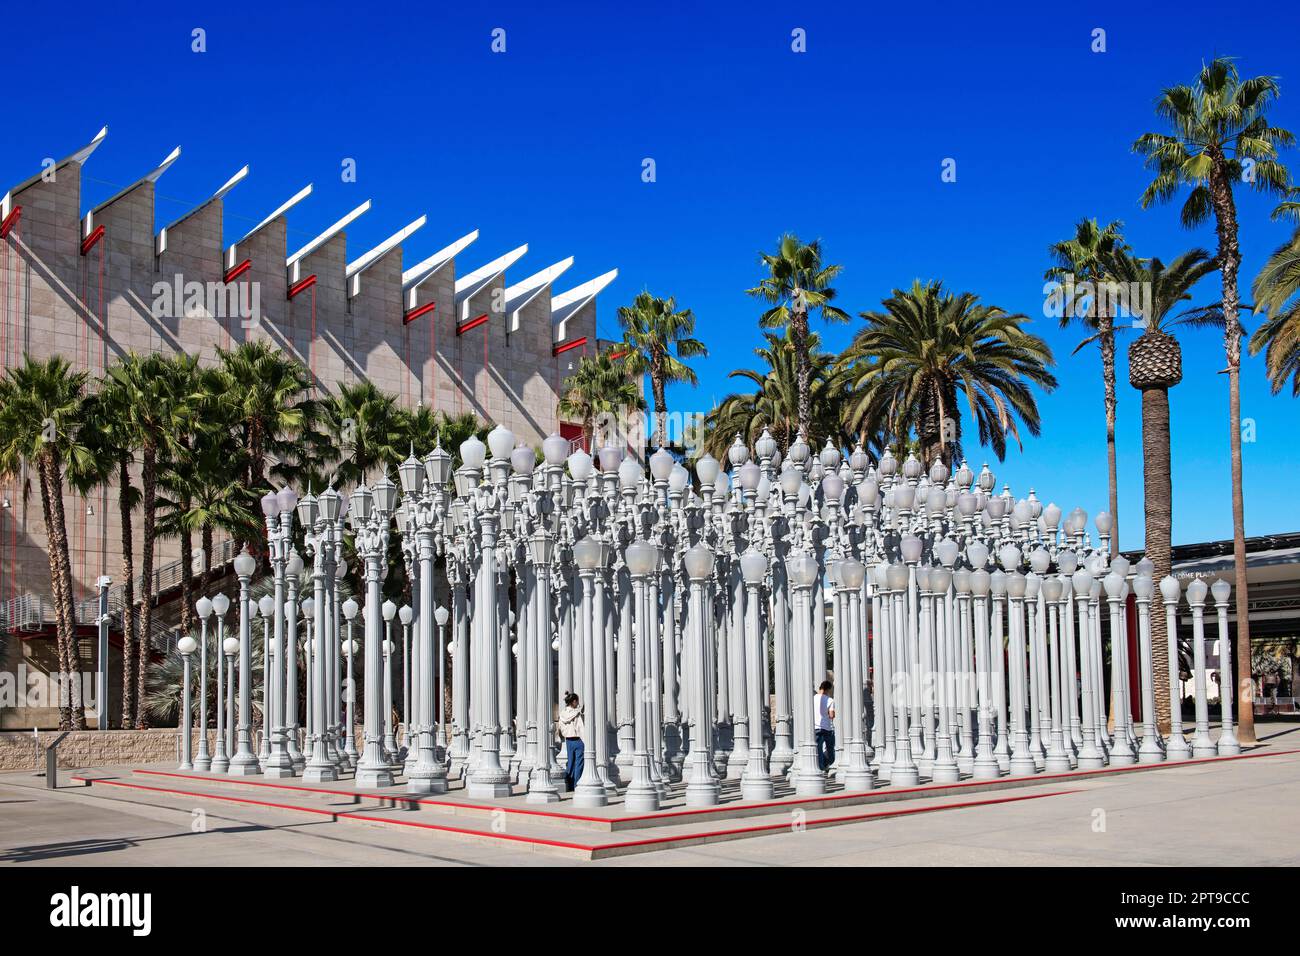 Installation de lumière urbaine, réverbères, Los Angeles County Museum of Art, LACMA, Los Angeles, Californie, États-Unis Banque D'Images